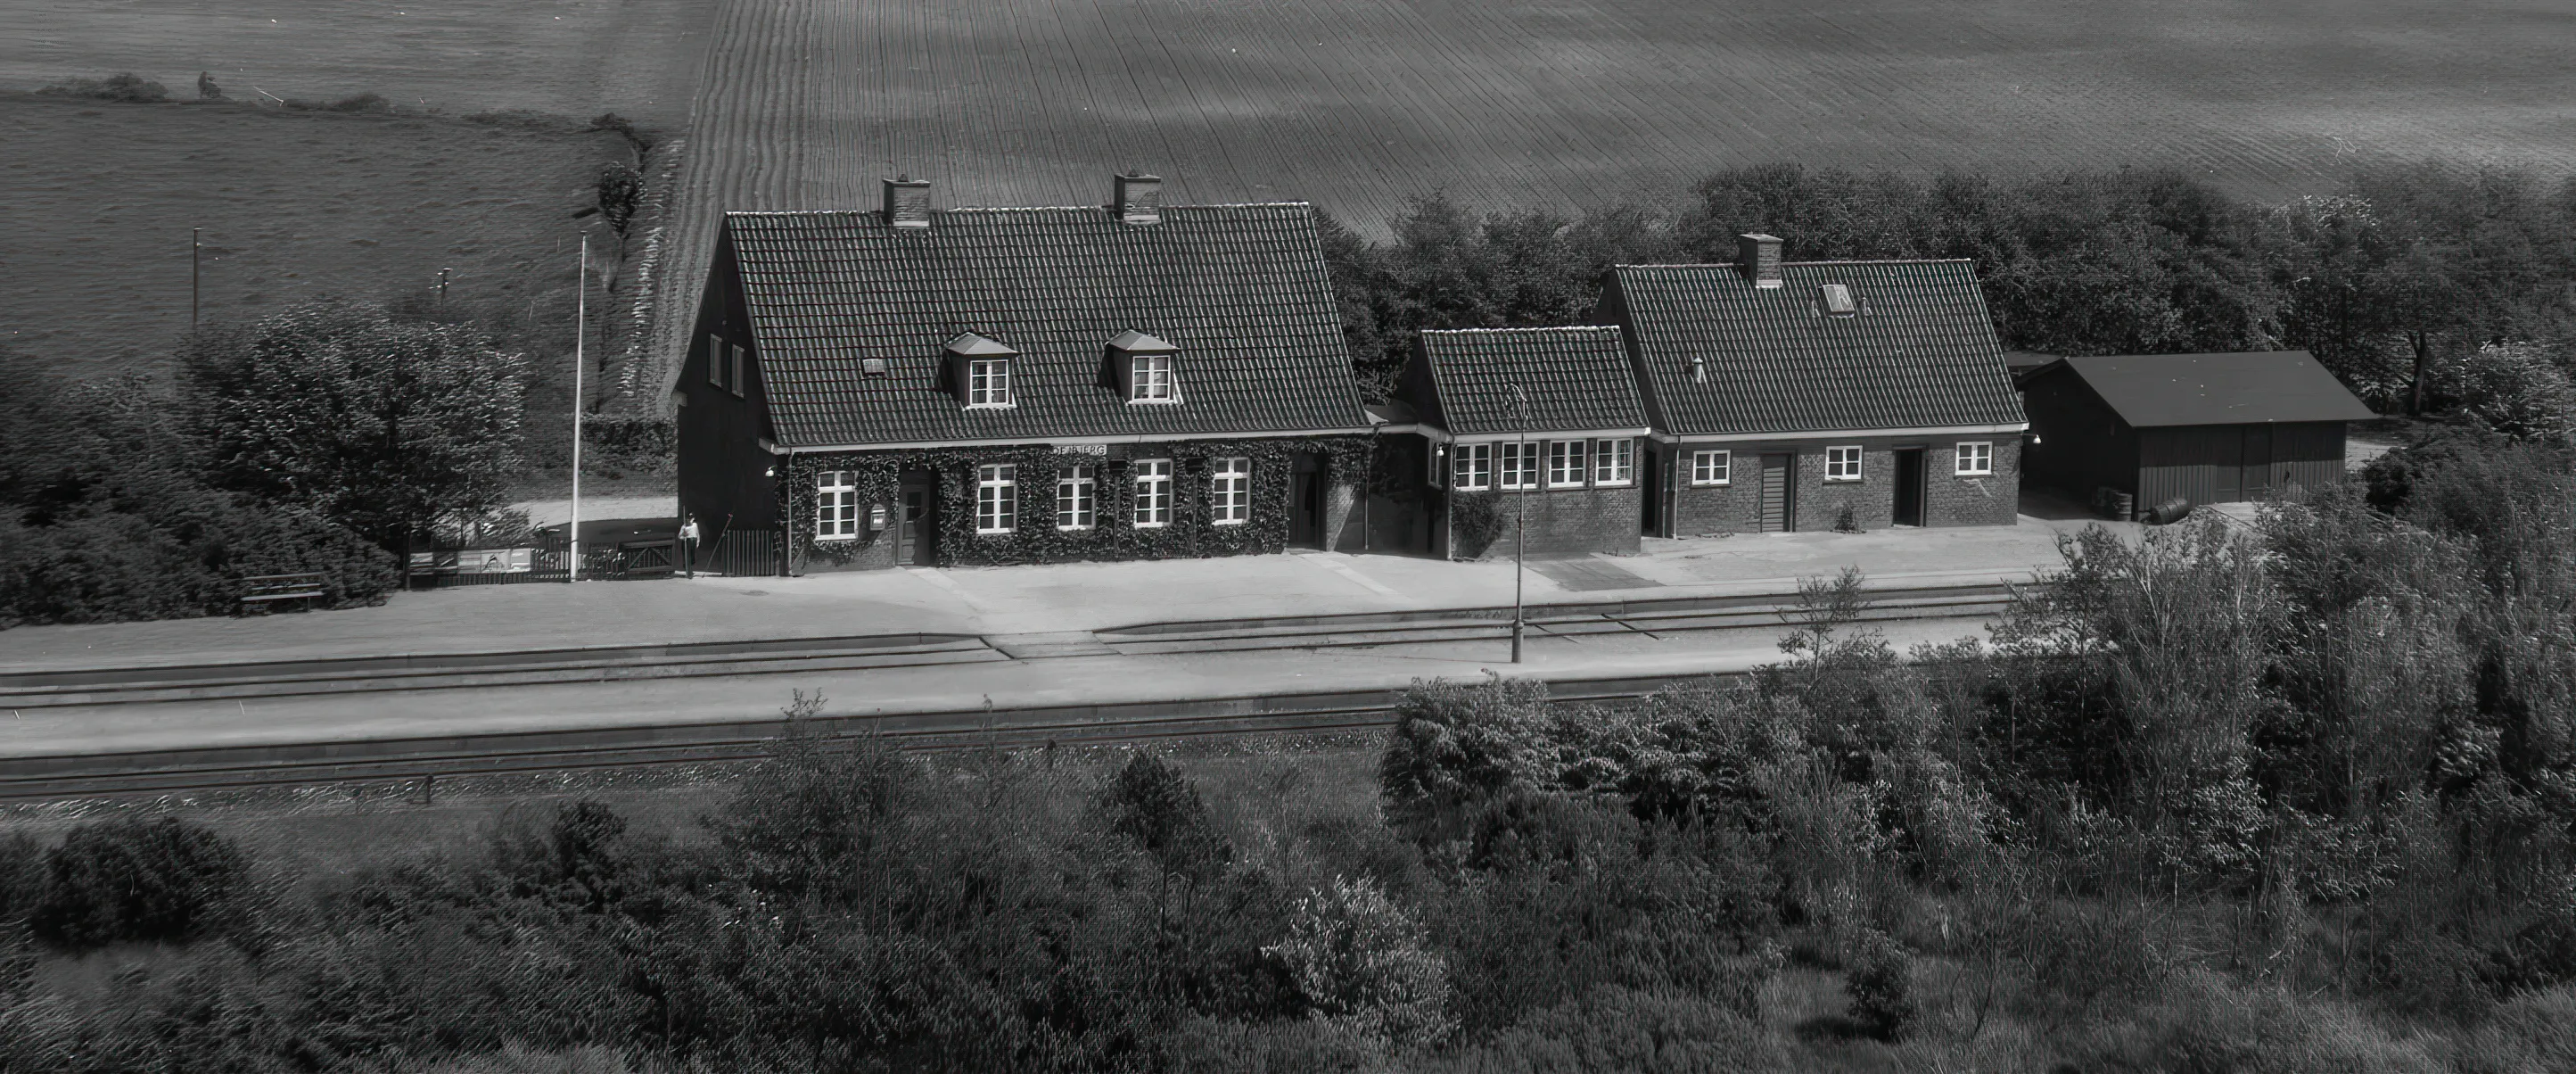 Billede af Dejbjerg Station.